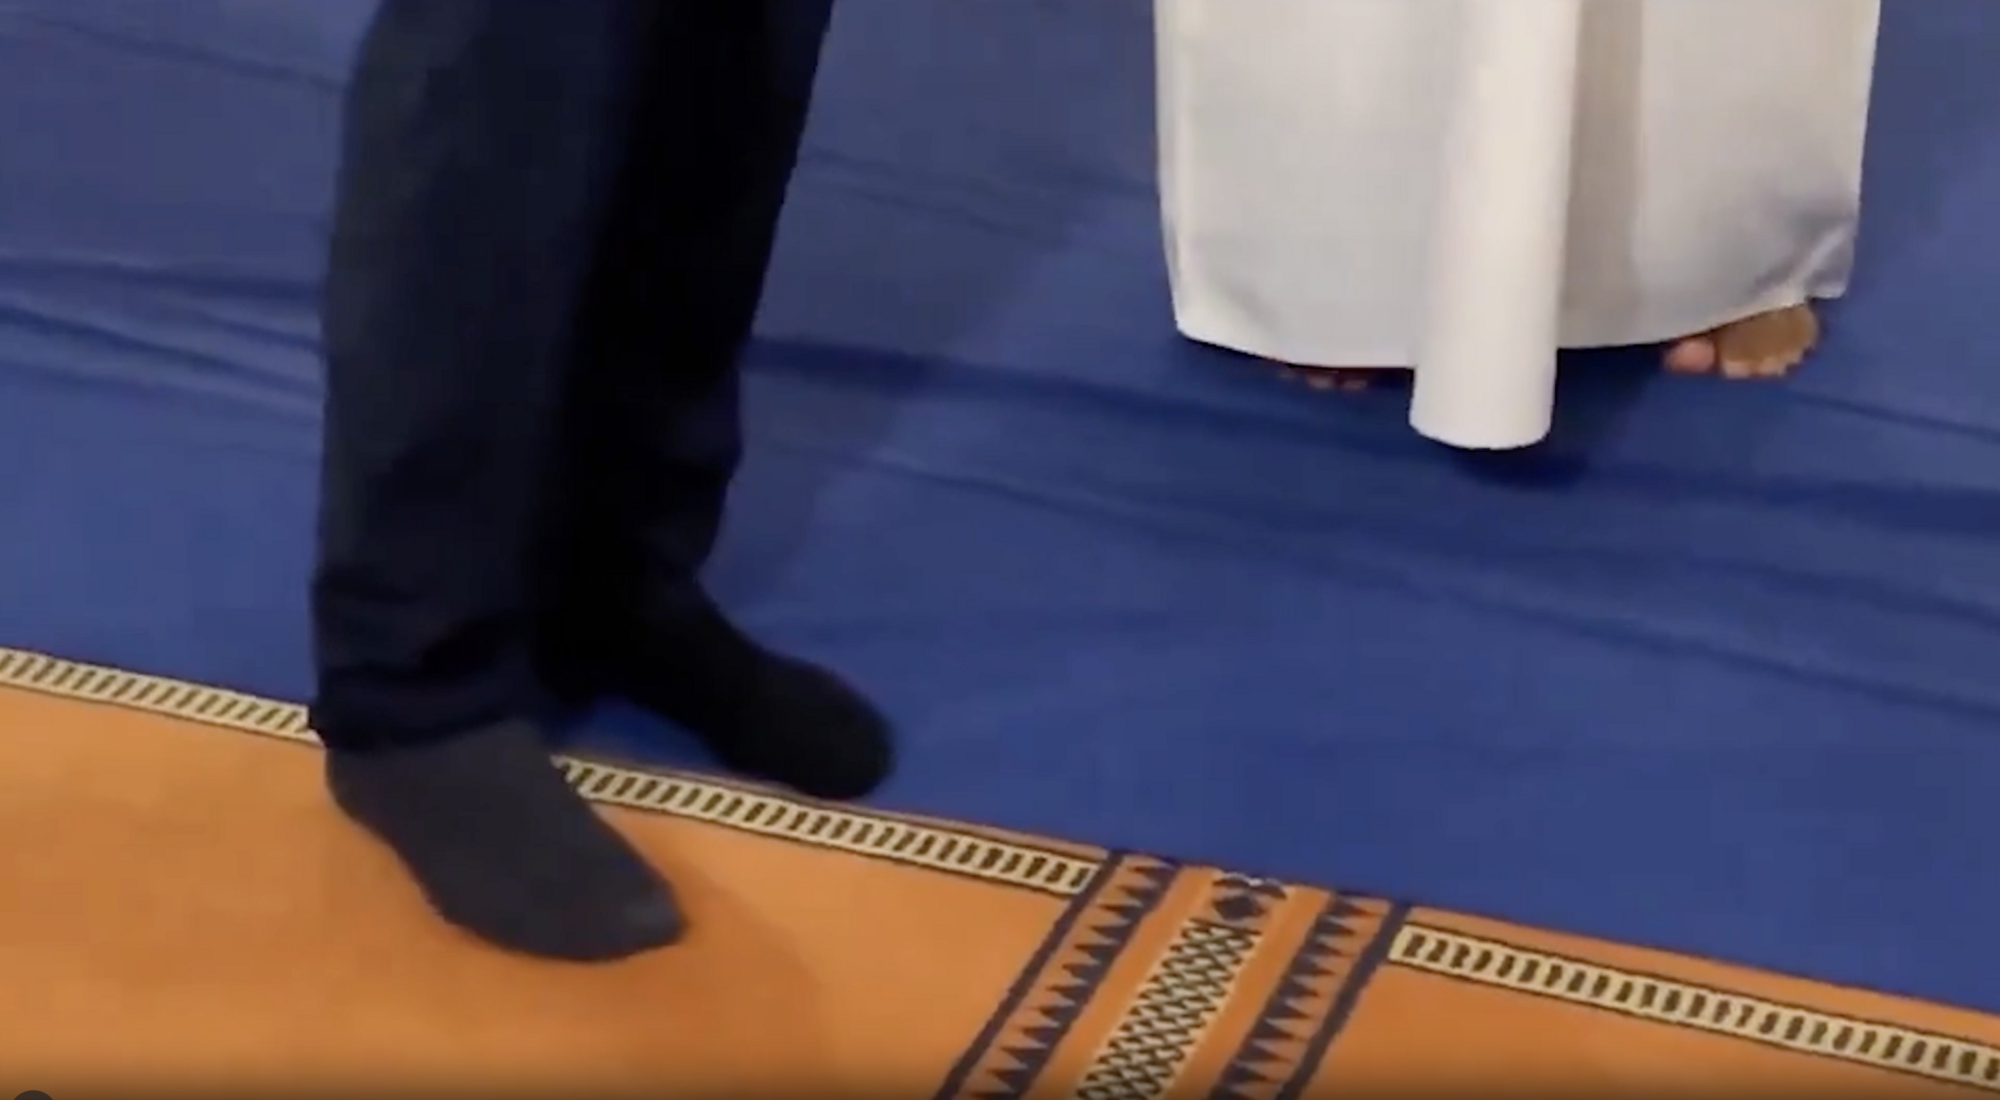 Вице-канцлер Германии во время визита в Оман разулся в мечети и засветил разные носки: конфуз попал на видео